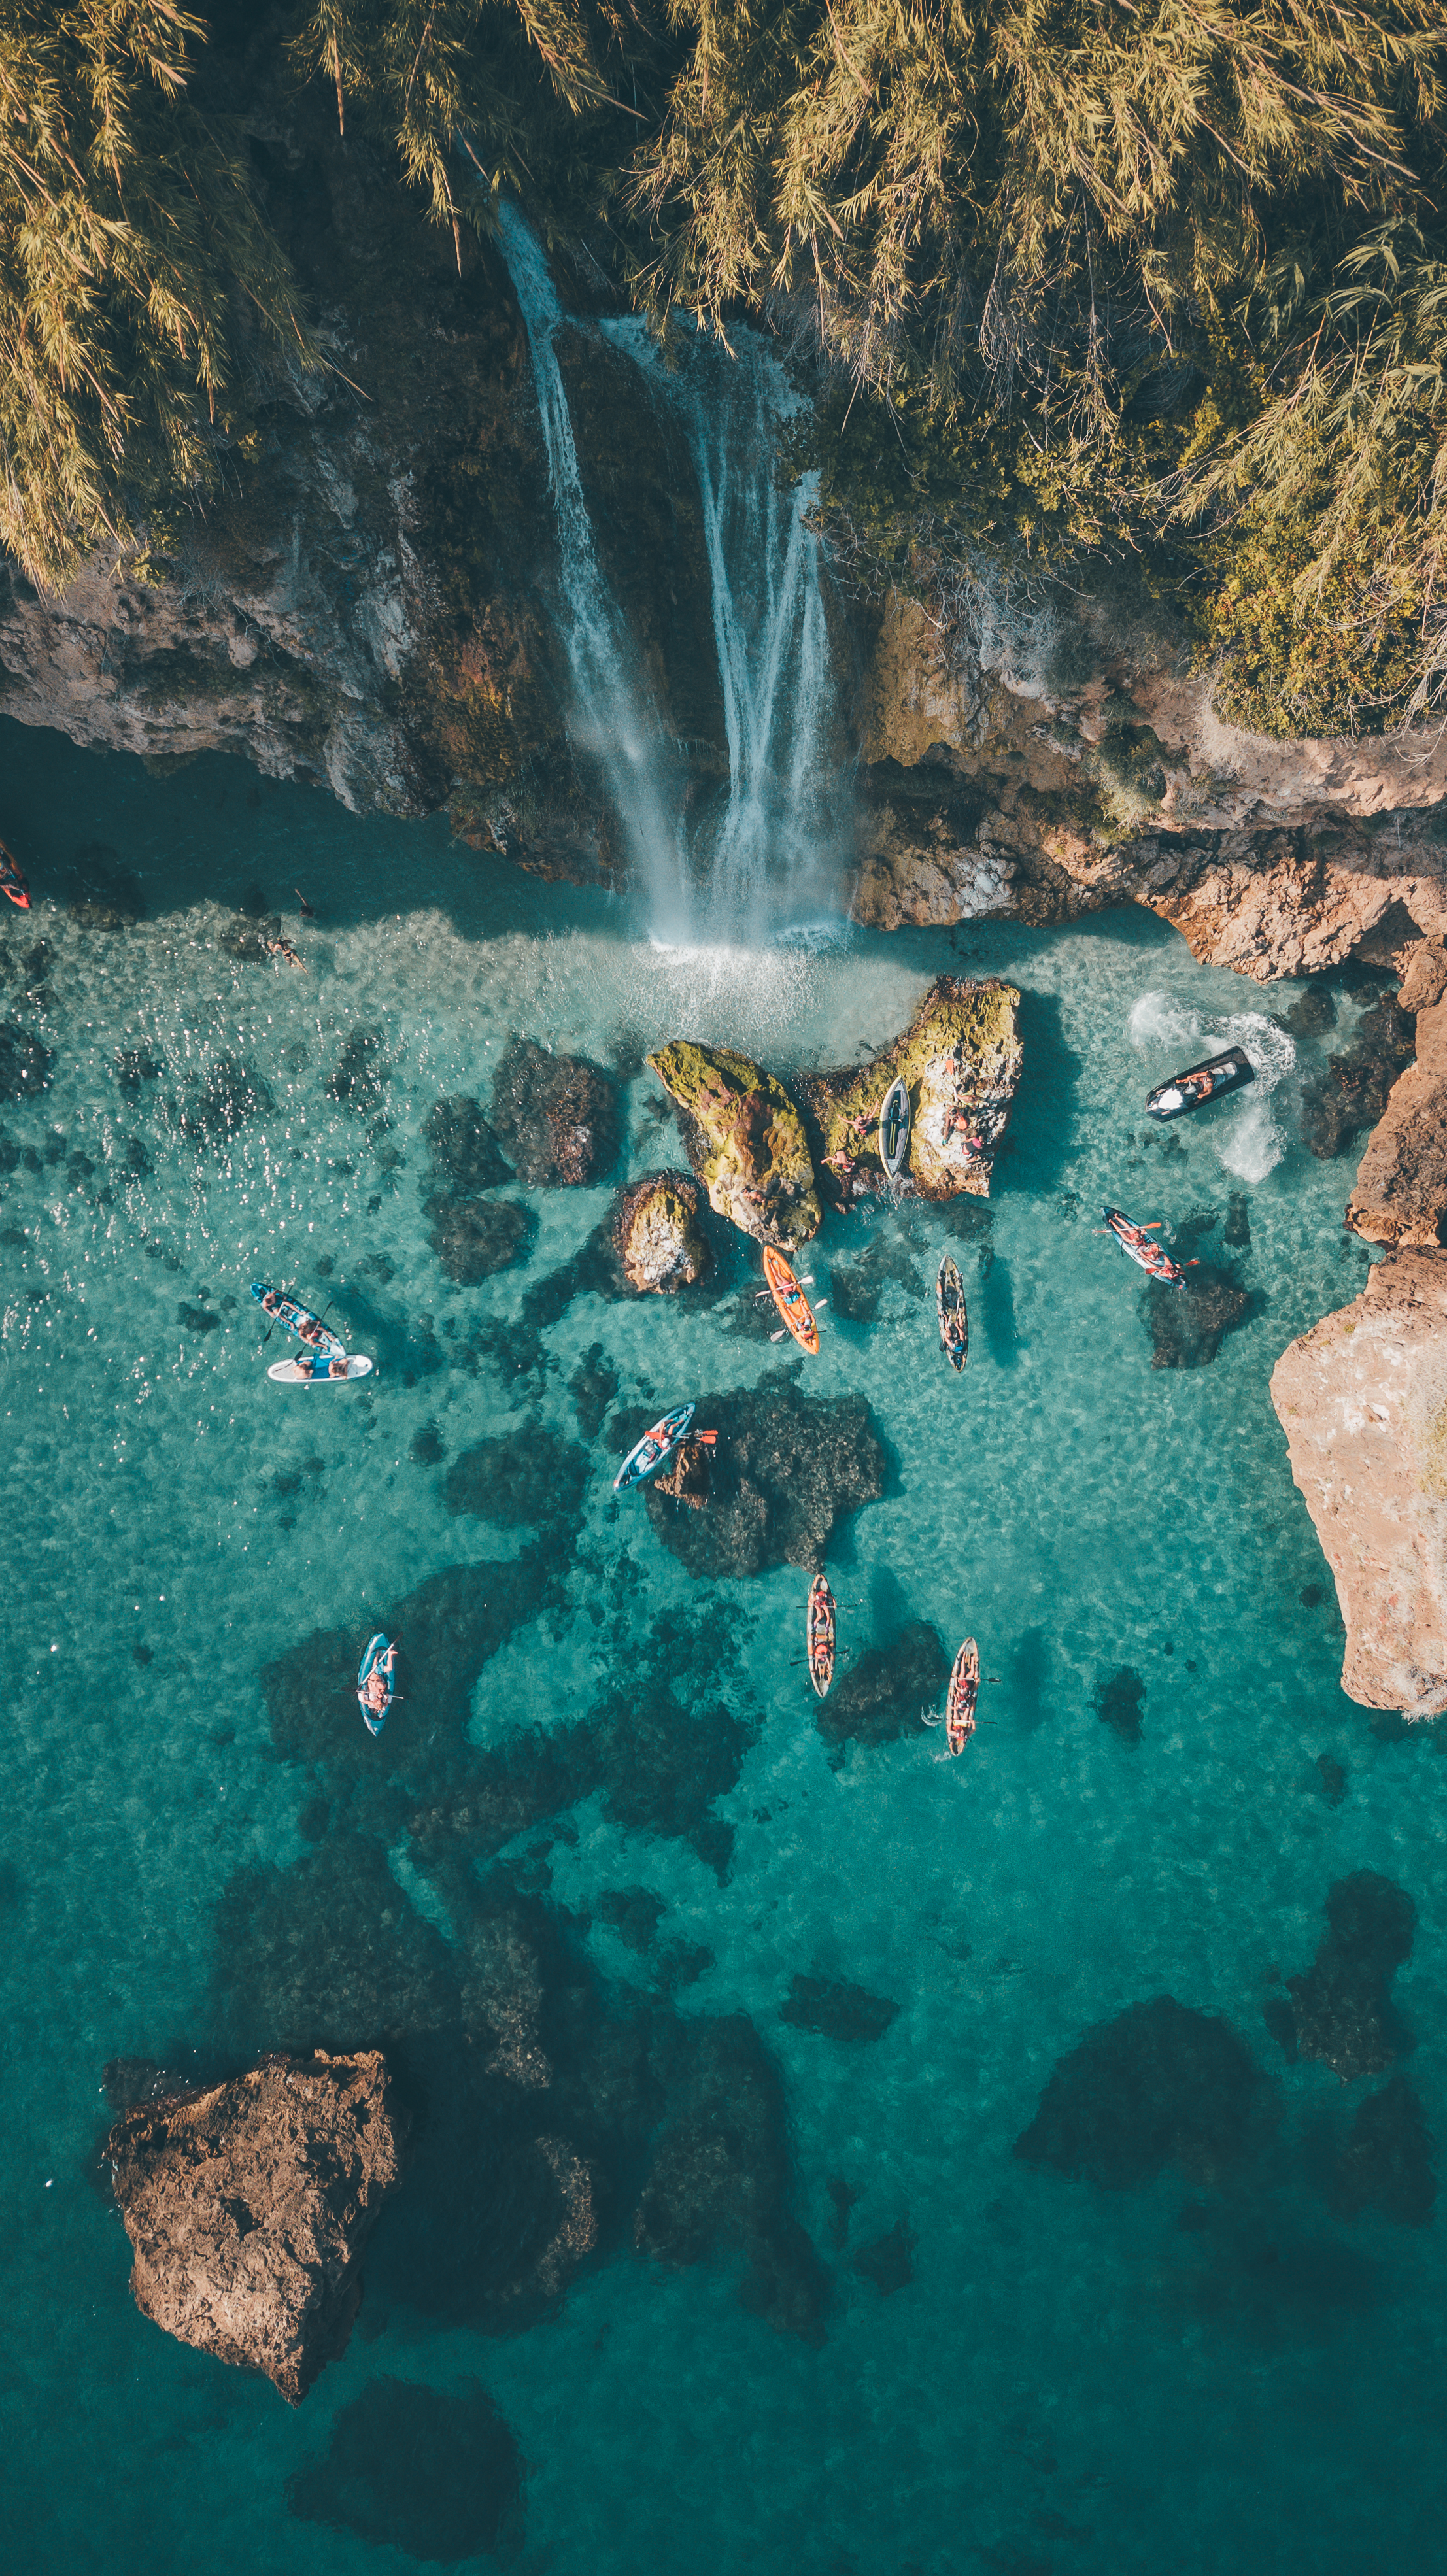 Фото скалы водопад синее море - бесплатные картинки на Fonwall